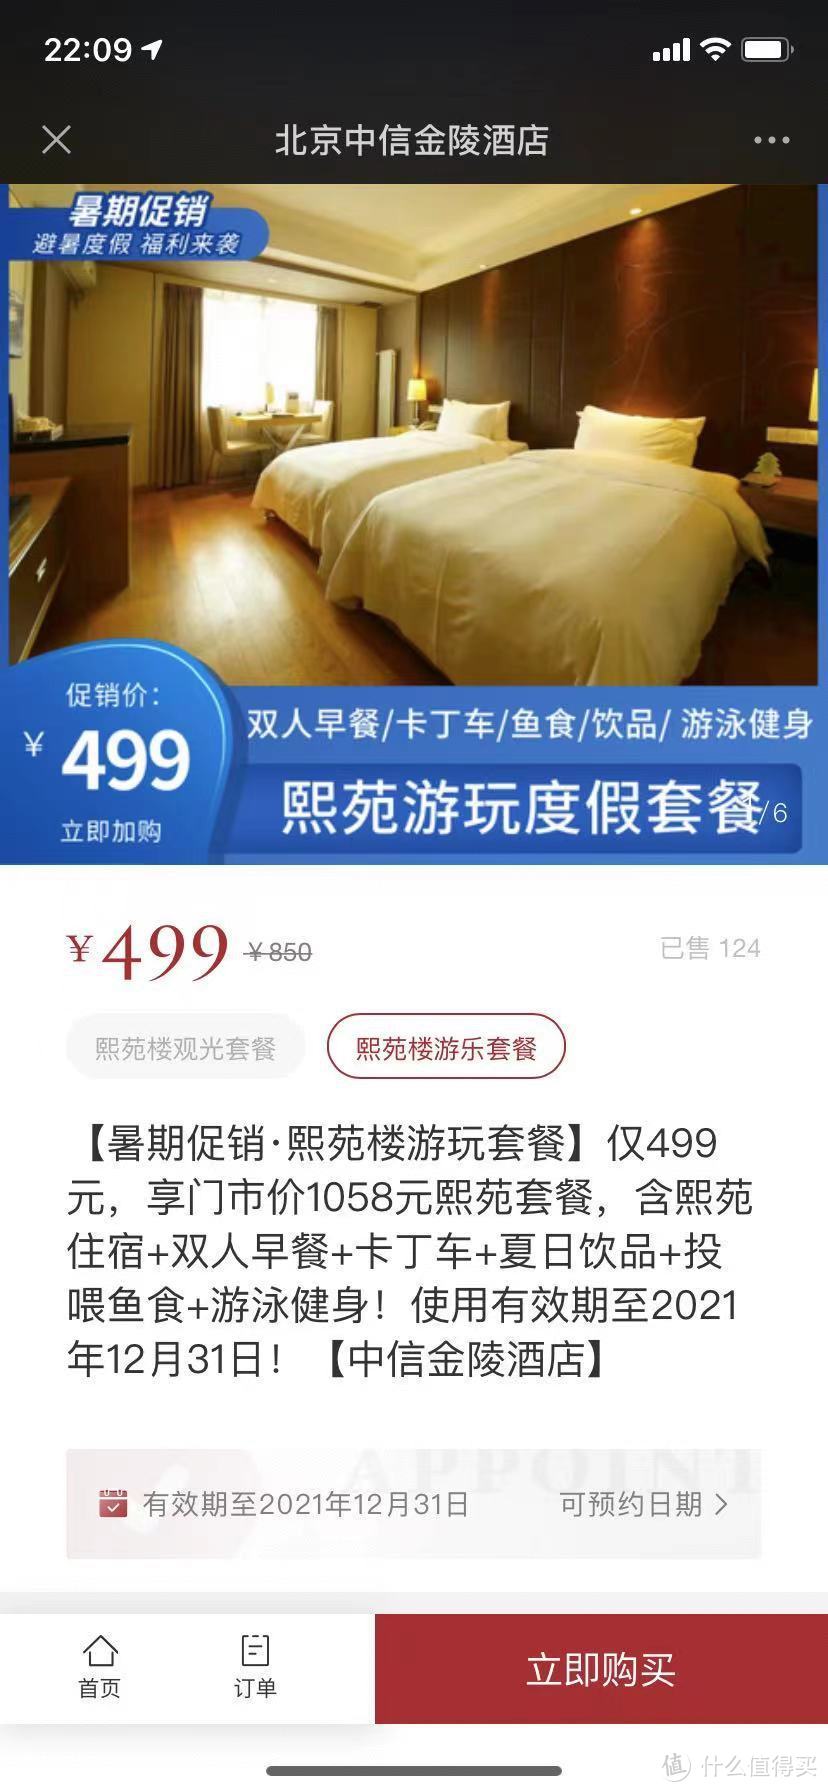 中信金陵酒店微信公众号有售